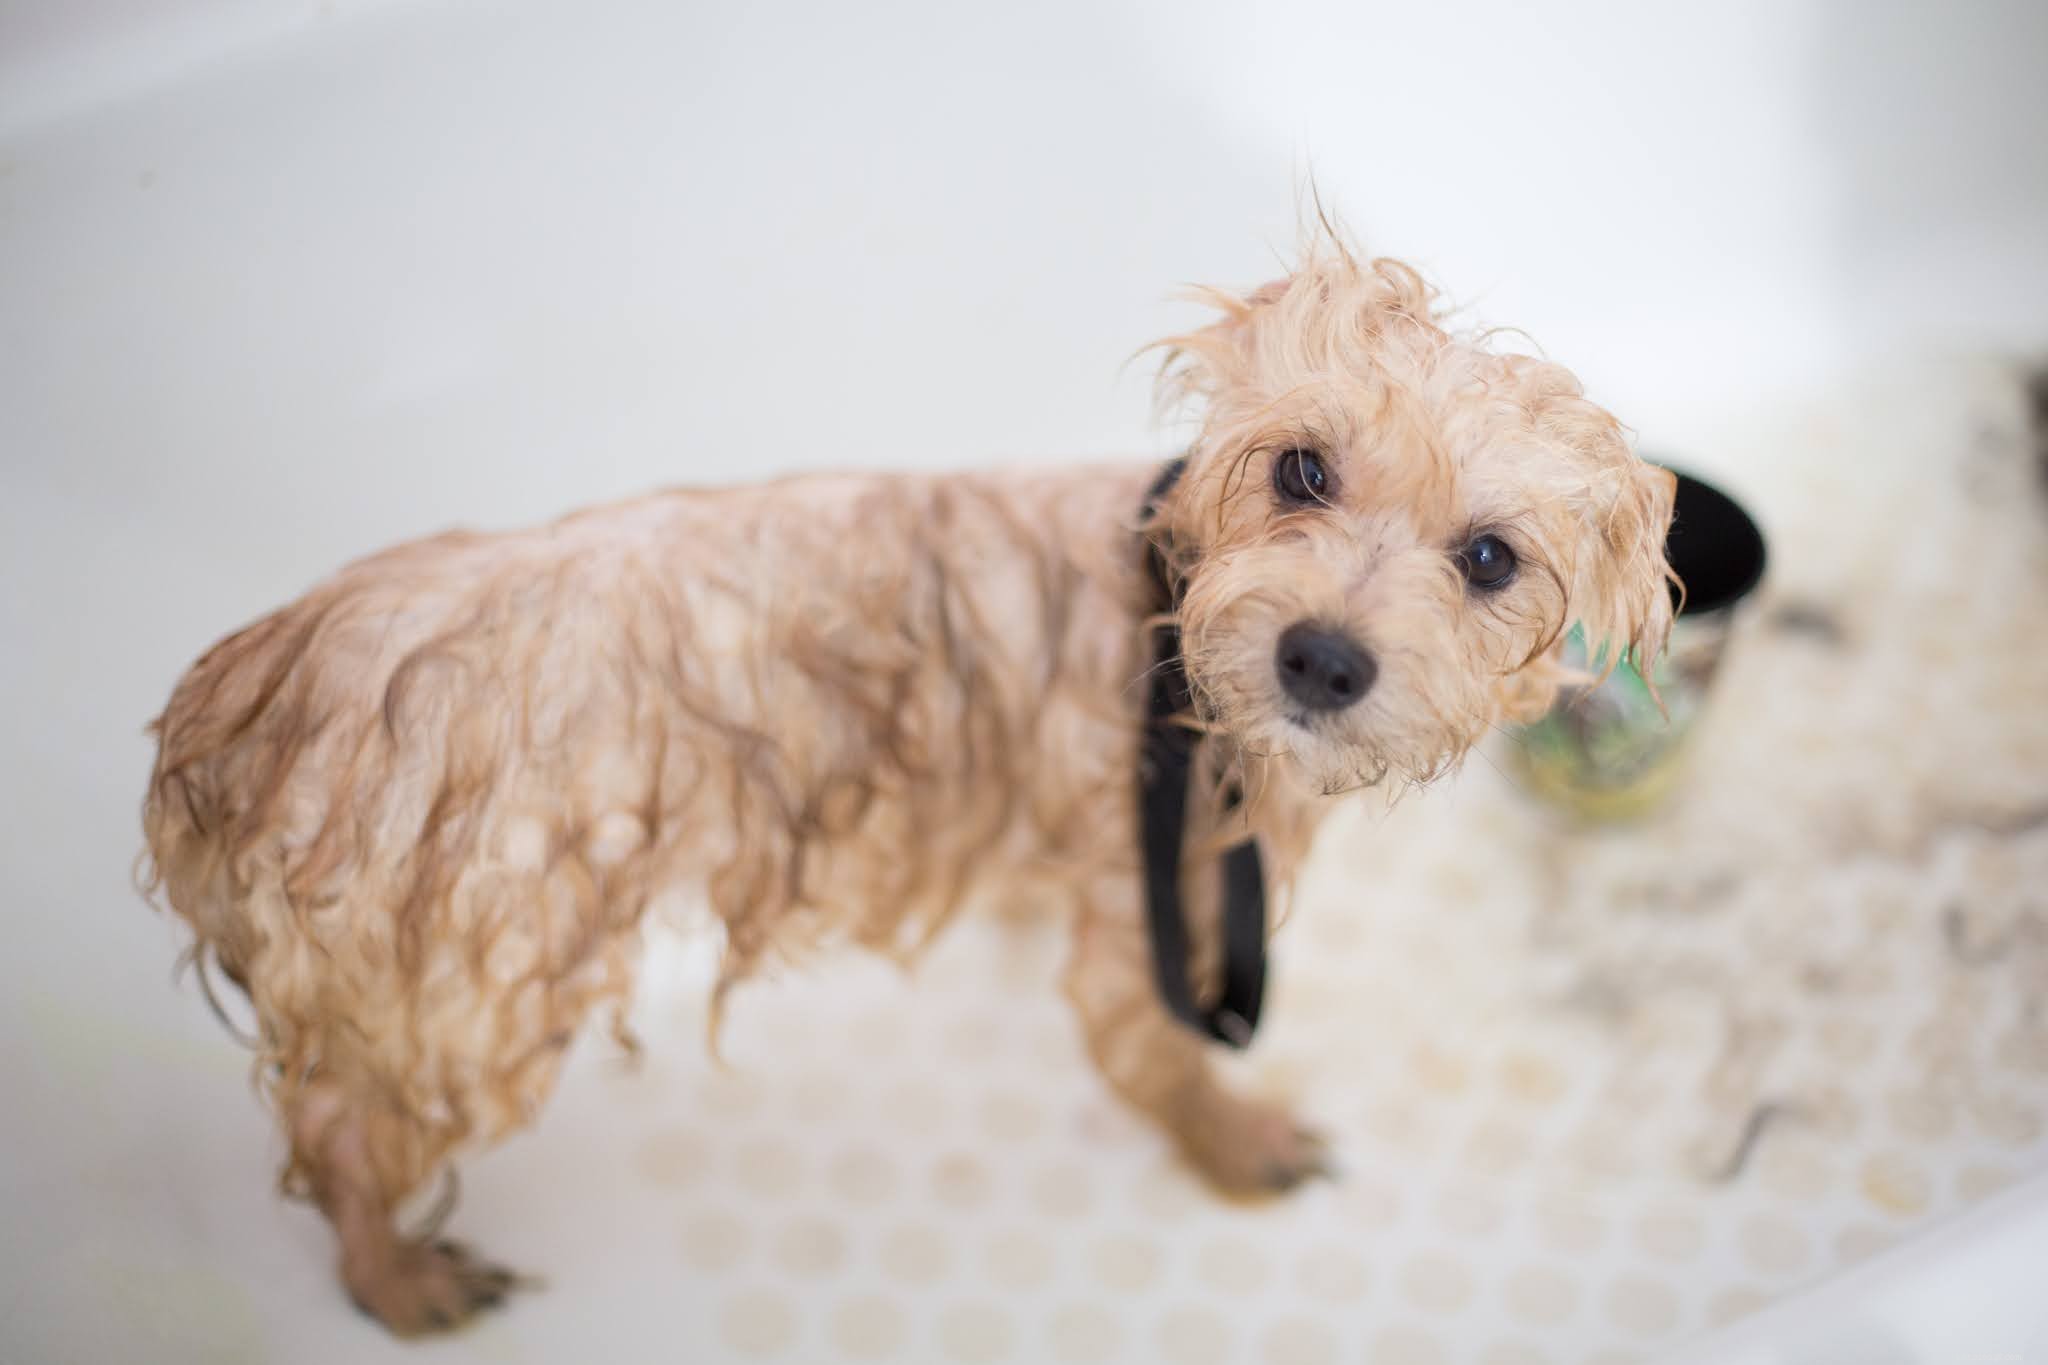 Hoe vaak gaat de hond in bad en wat is het meest correcte antwoord?